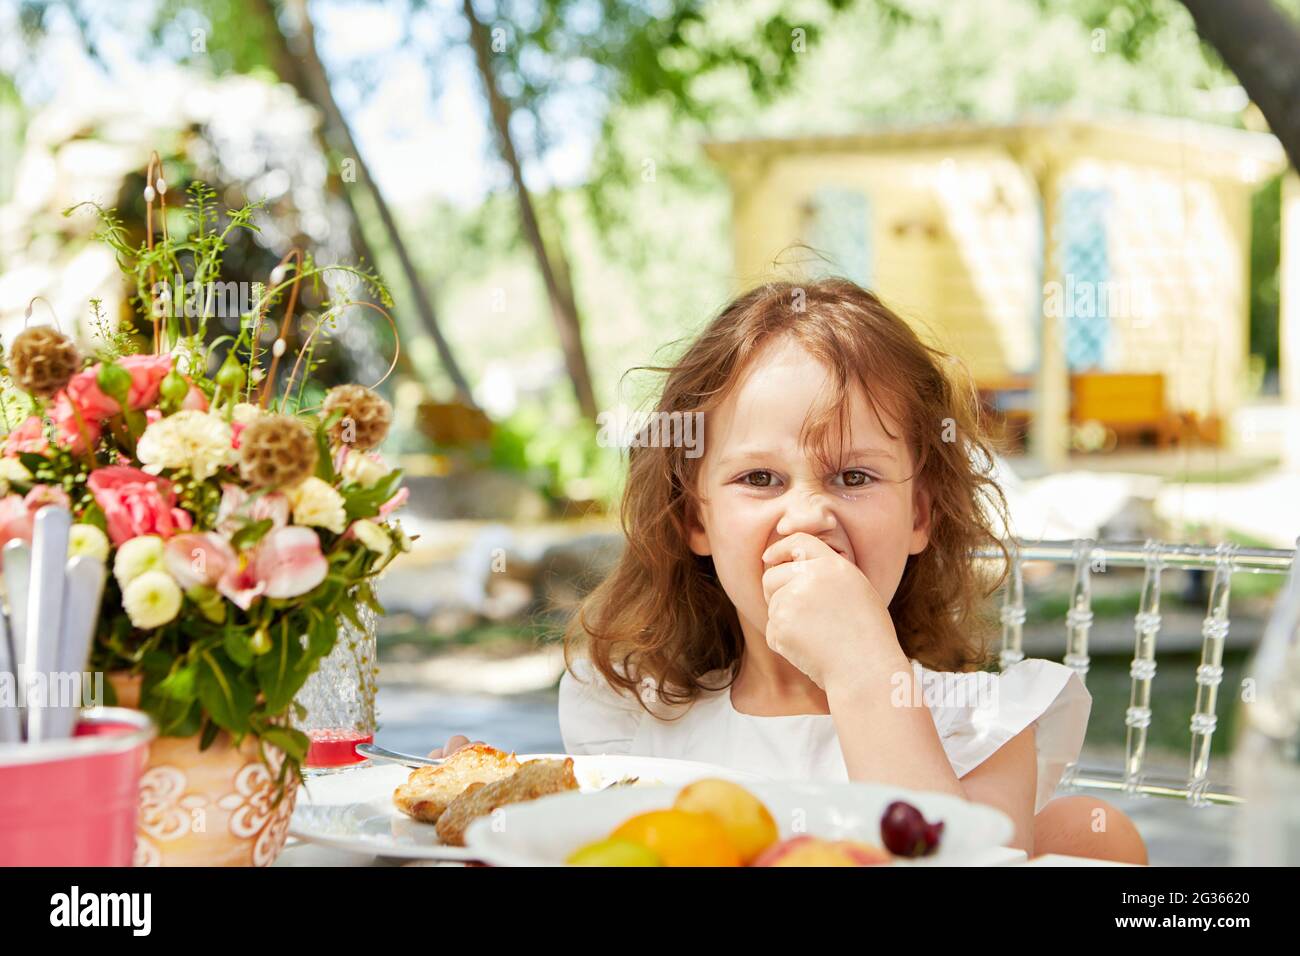 Un niño pequeño y lindo comiendo comida sabrosa mientras se sienta en la mesa en el patio trasero y mirando la cámara Foto de stock